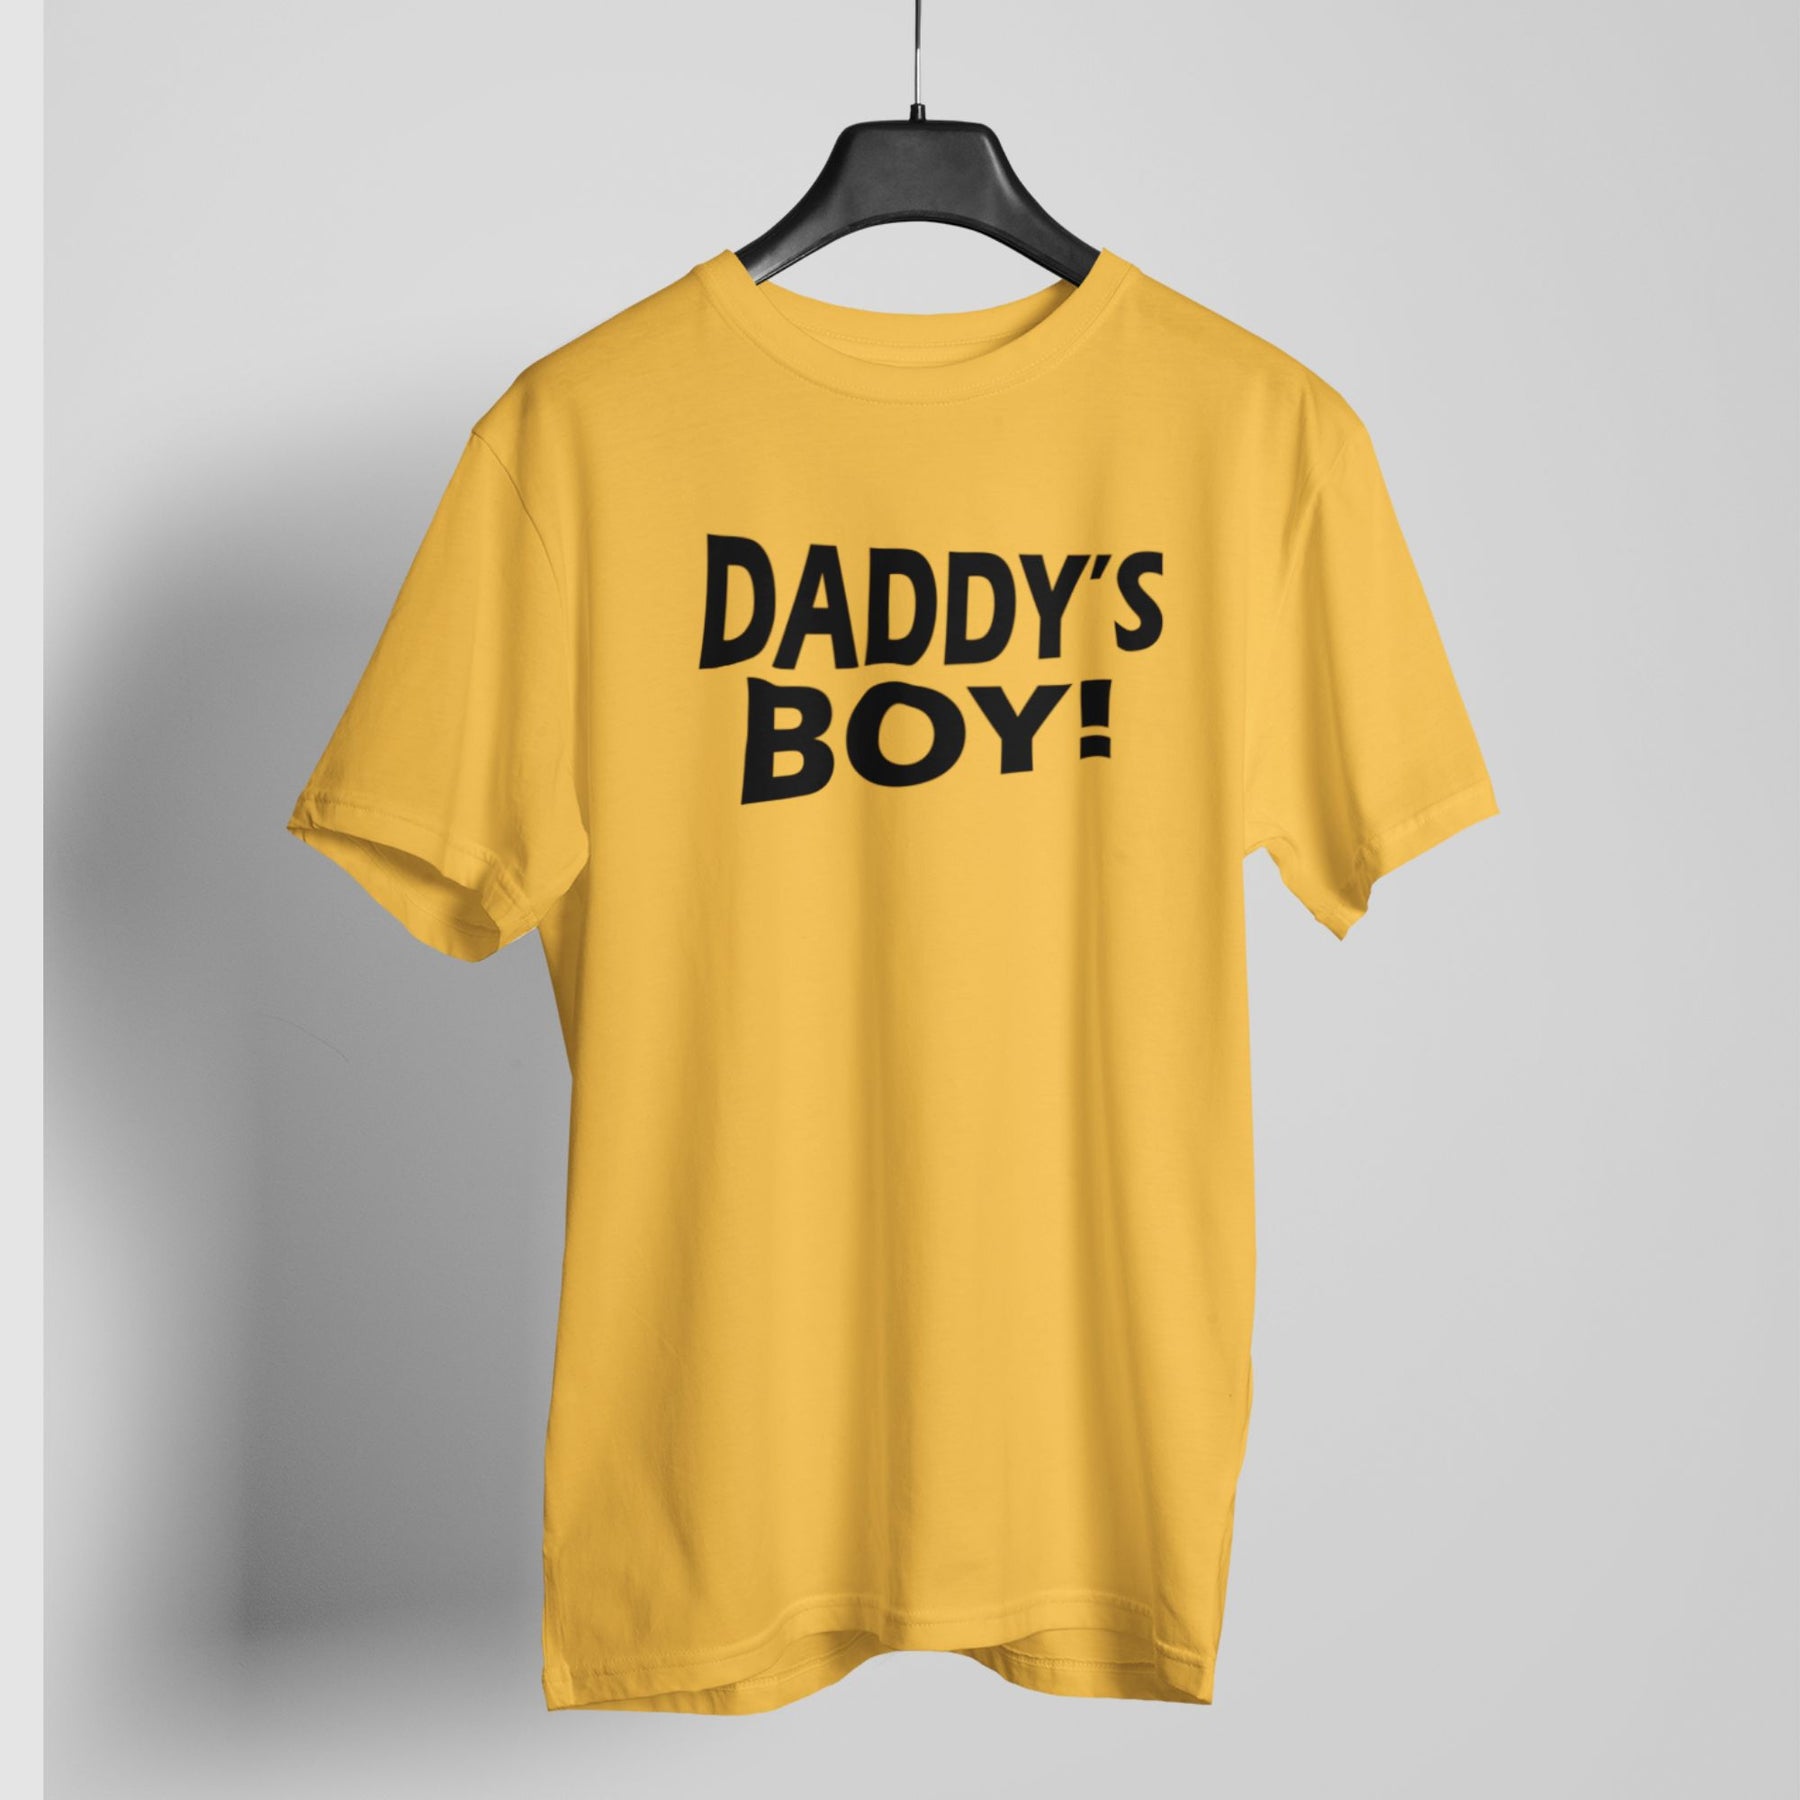 Daddys boy lgbt t-shirt